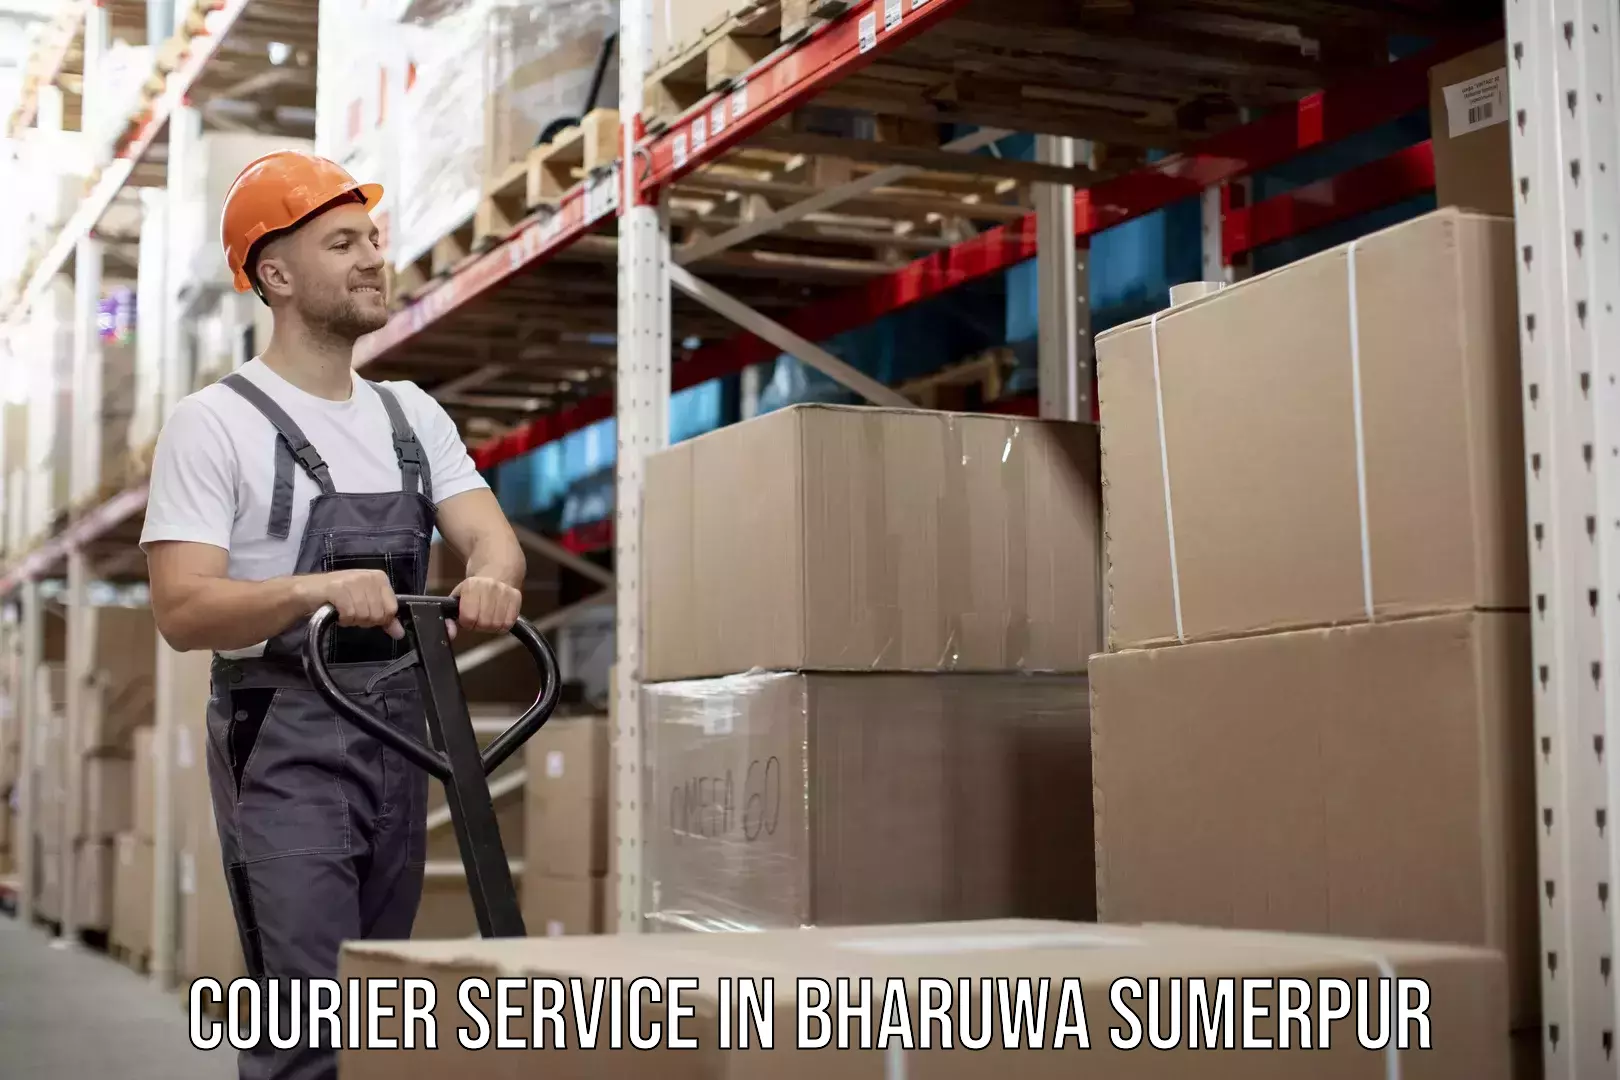 Speedy delivery service in Bharuwa Sumerpur